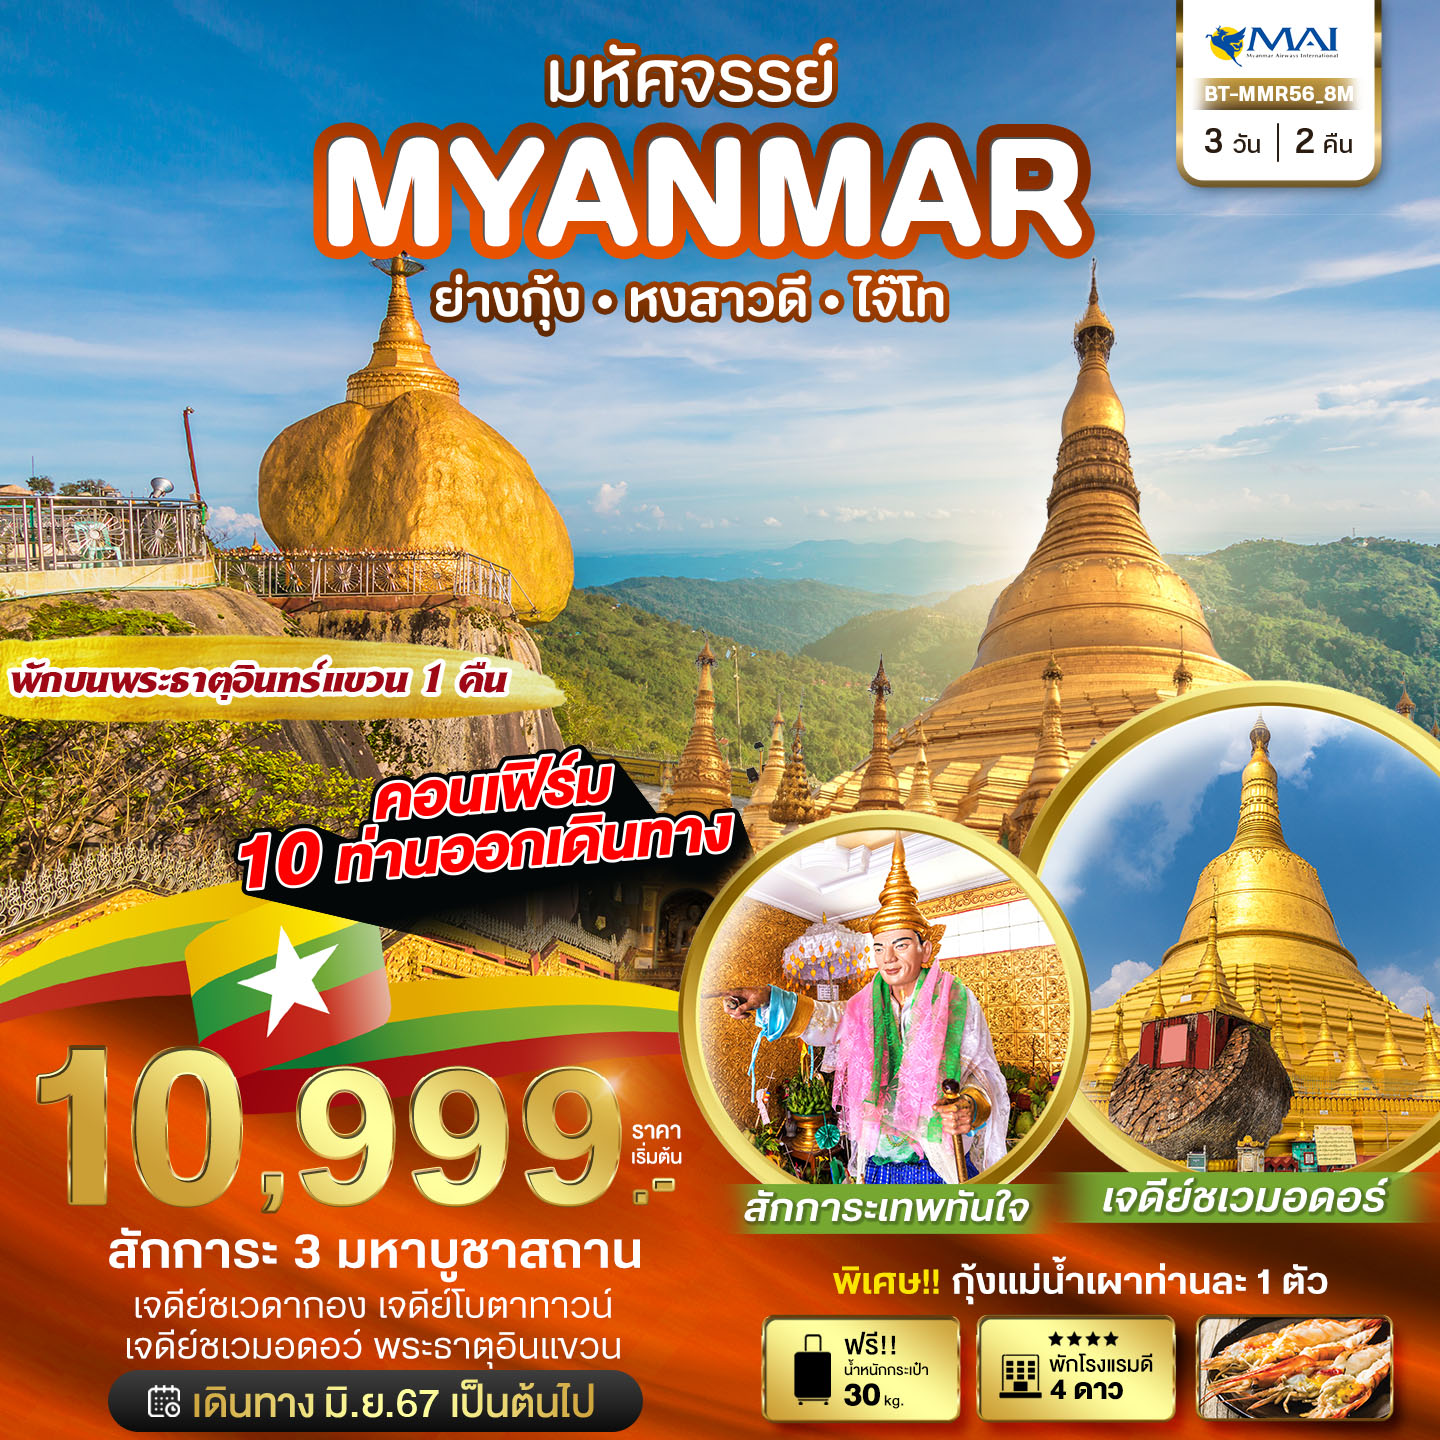 มหัศจรรย์ เมียนมาร์ 3วัน 2คืน by MYANMAR AIRWAYS